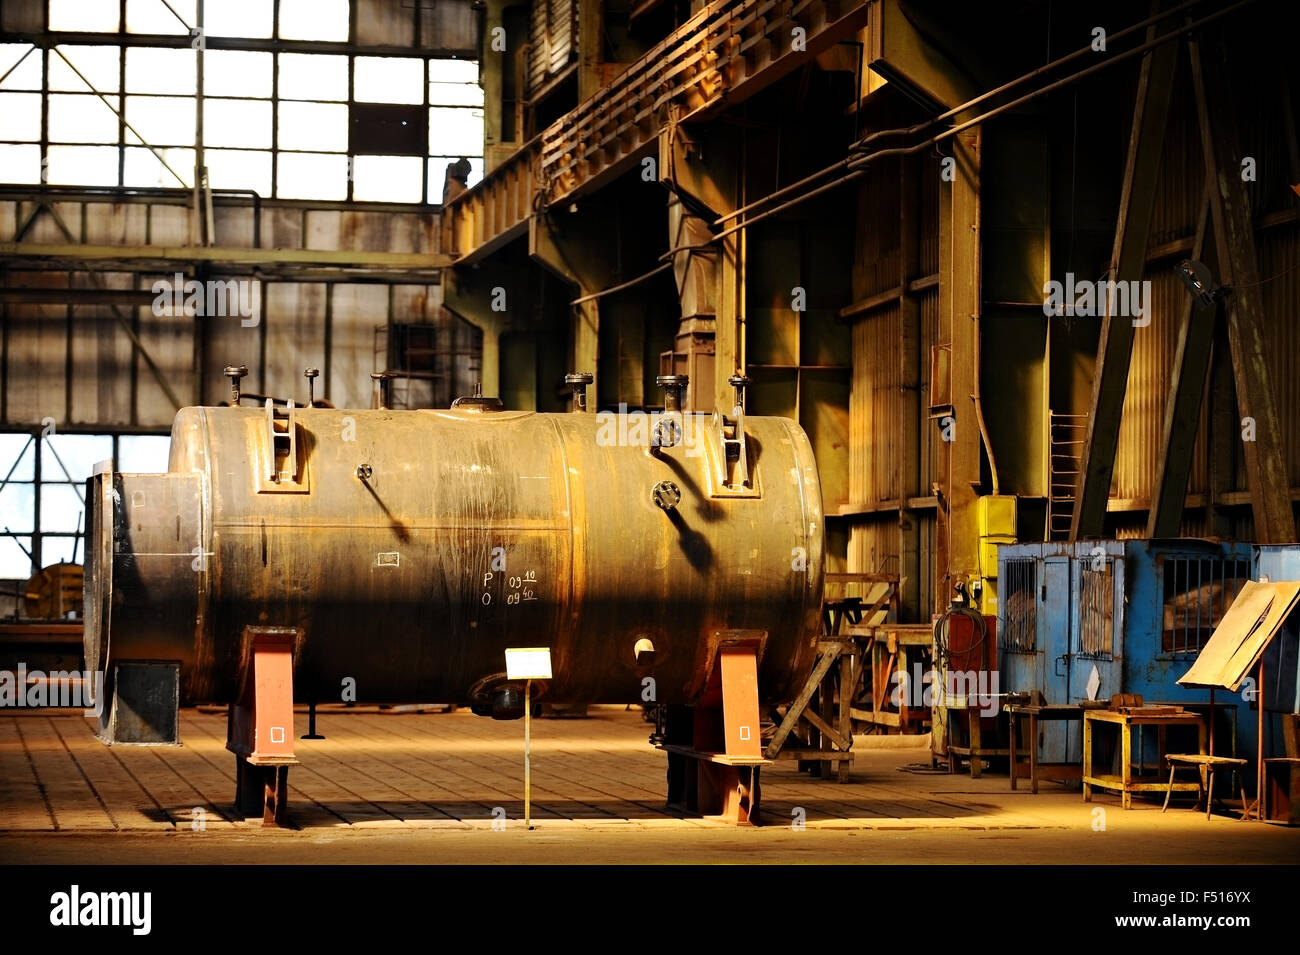 Dettaglio delle riprese con grande vasca industriale all'interno di una vecchia fabbrica Foto Stock